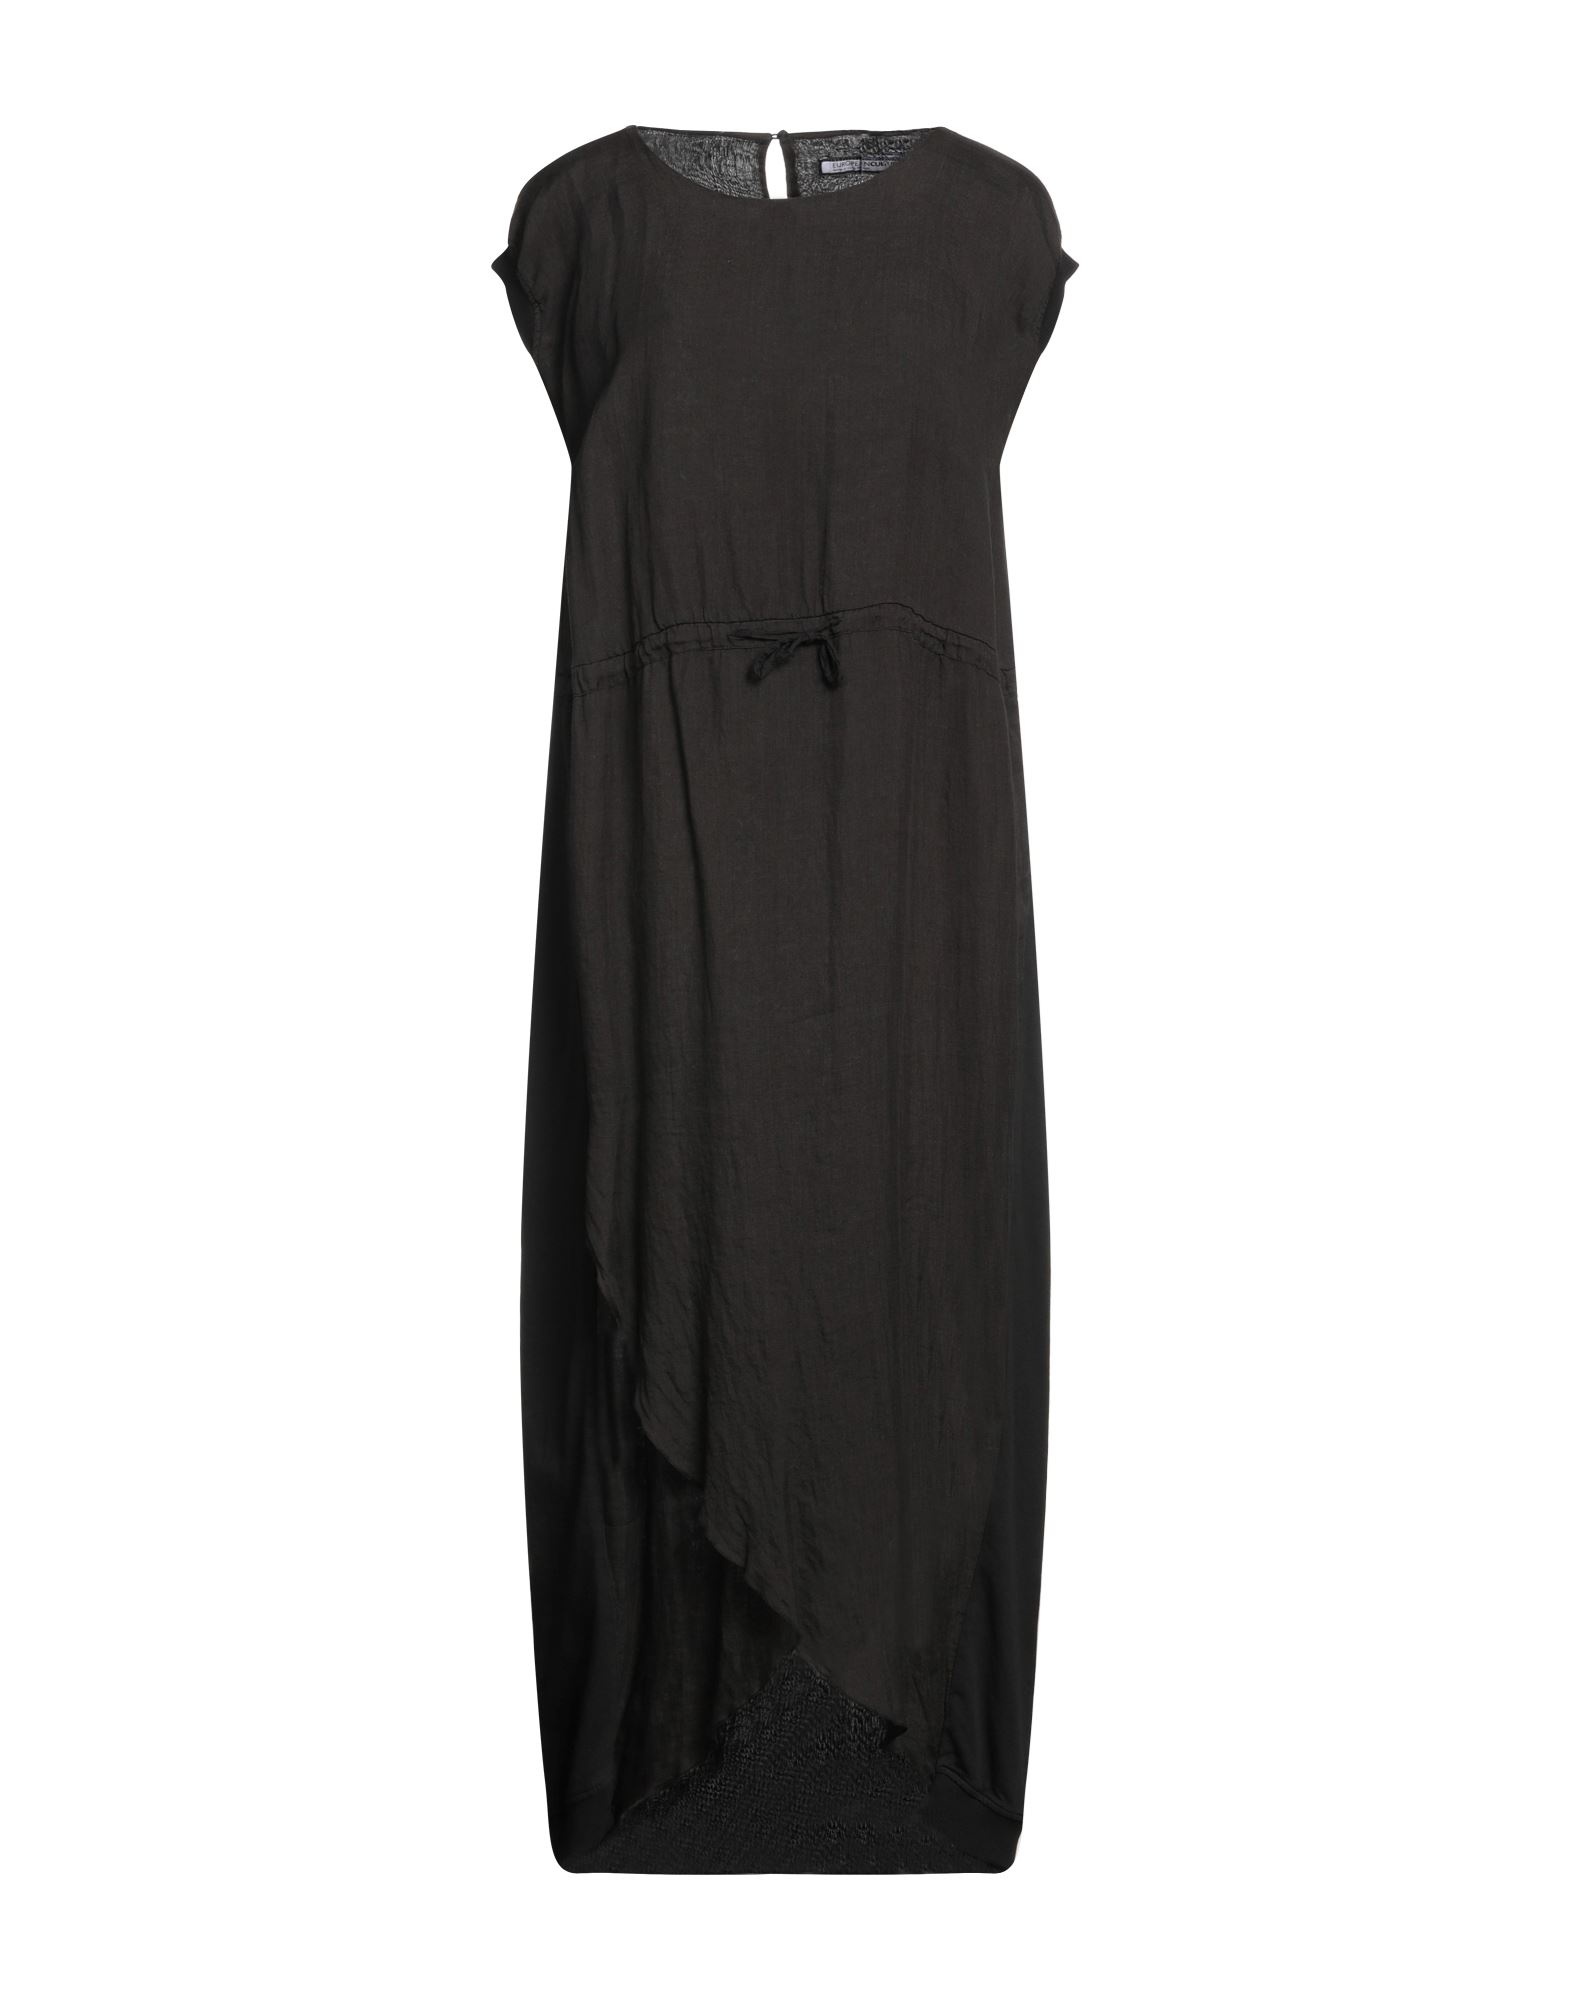 Shop European Culture Woman Midi Dress Black Size S Rayon, Cotton, Lycra